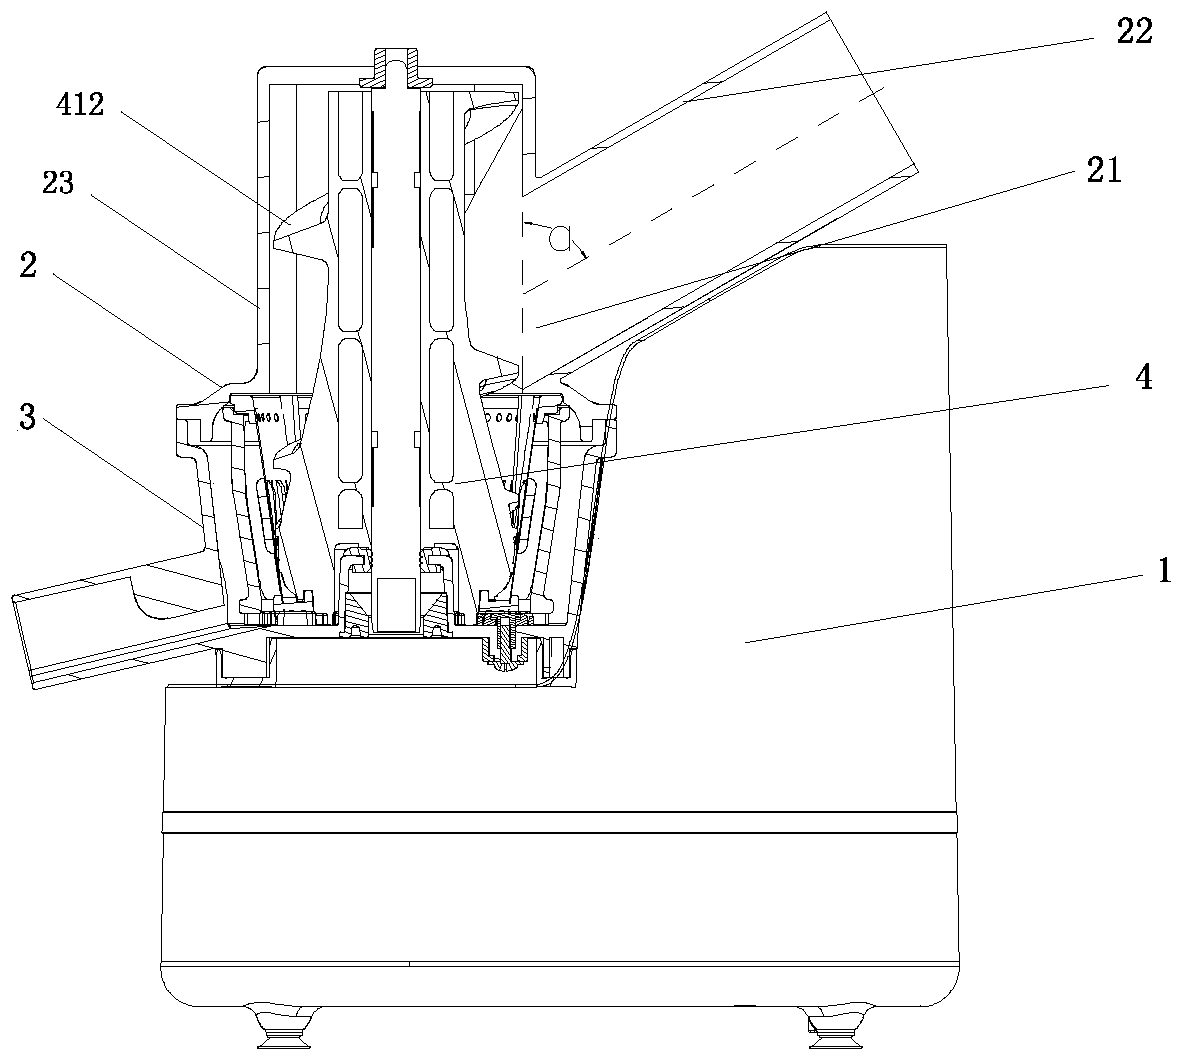 A vertical screw squeeze juice extractor